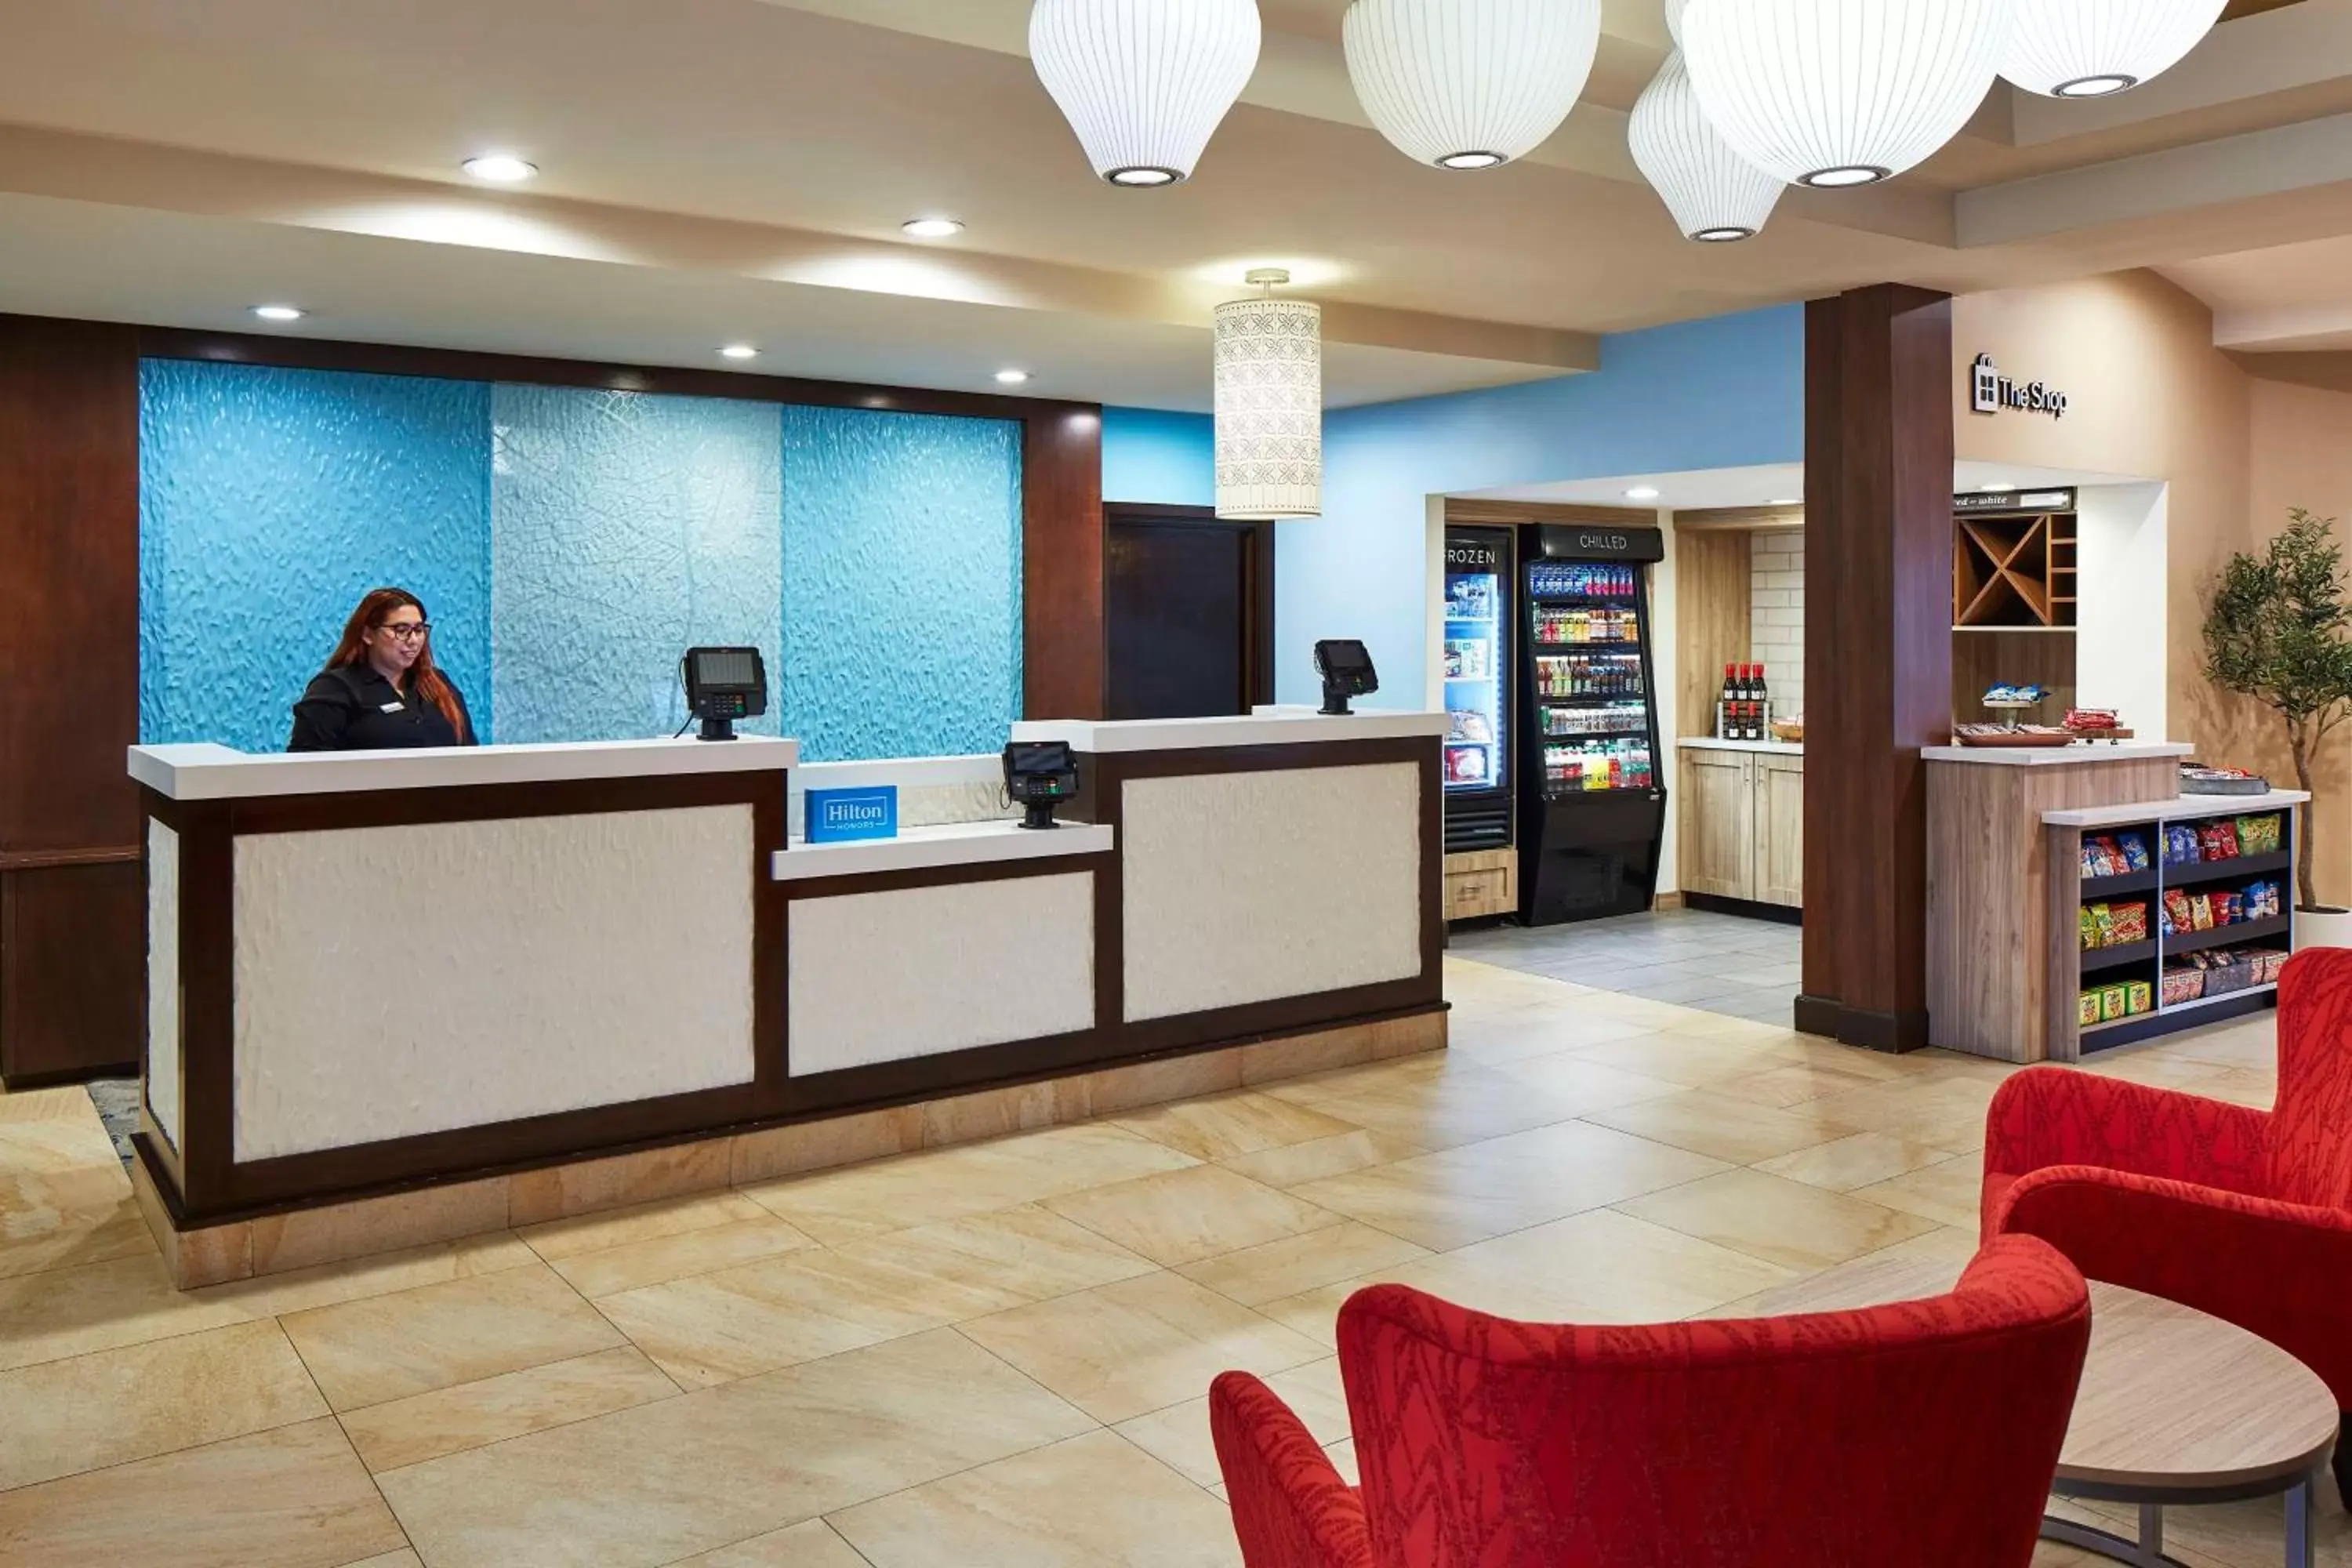 Lobby or reception, Lobby/Reception in Hilton Garden Inn Valencia Six Flags